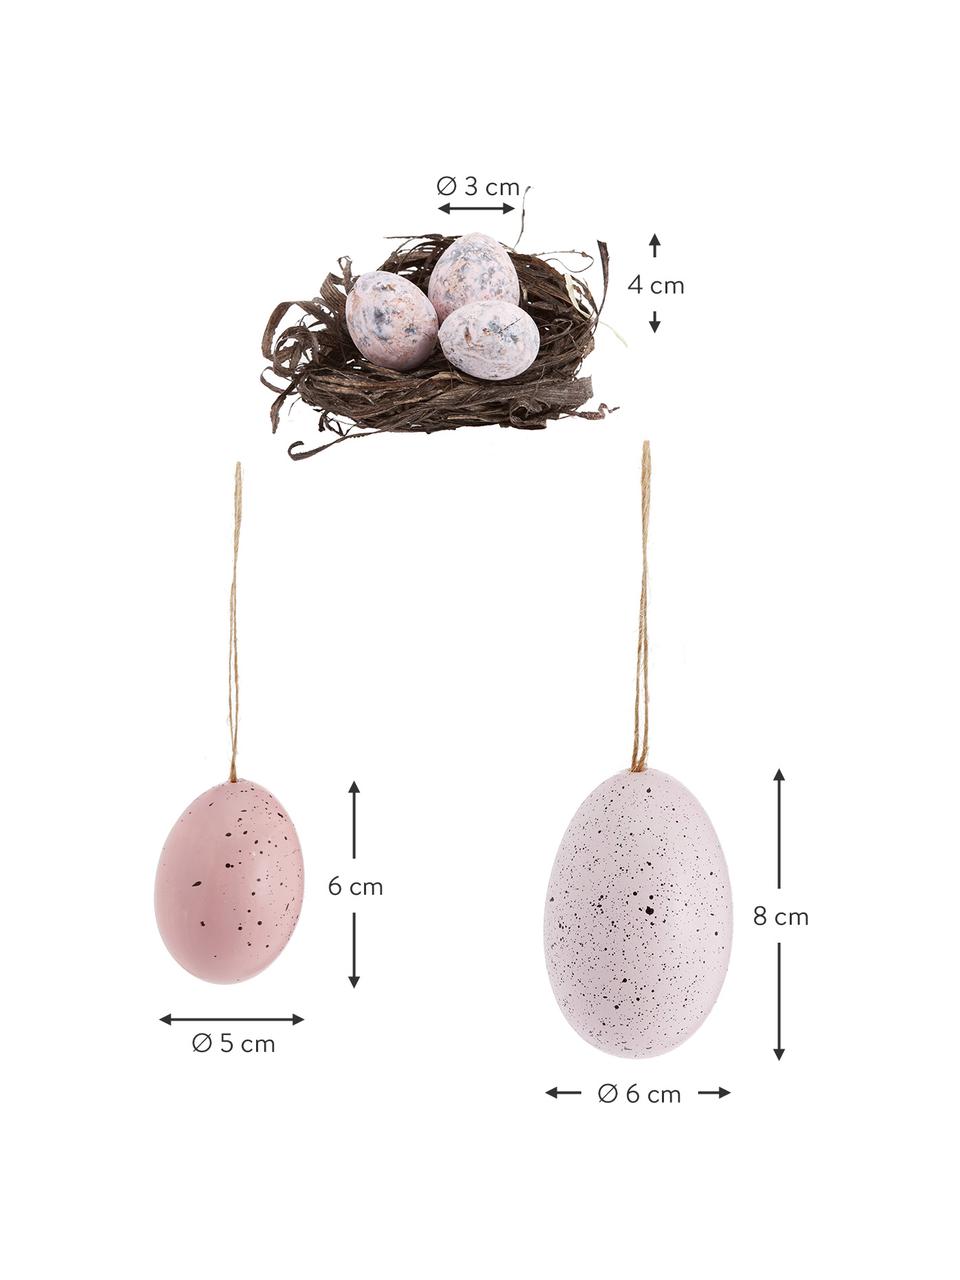 Deko-Objekt-Set Blush, 12-tlg., Echte Eier, Rosatöne, Grau, Braun, Set mit verschiedenen Größen